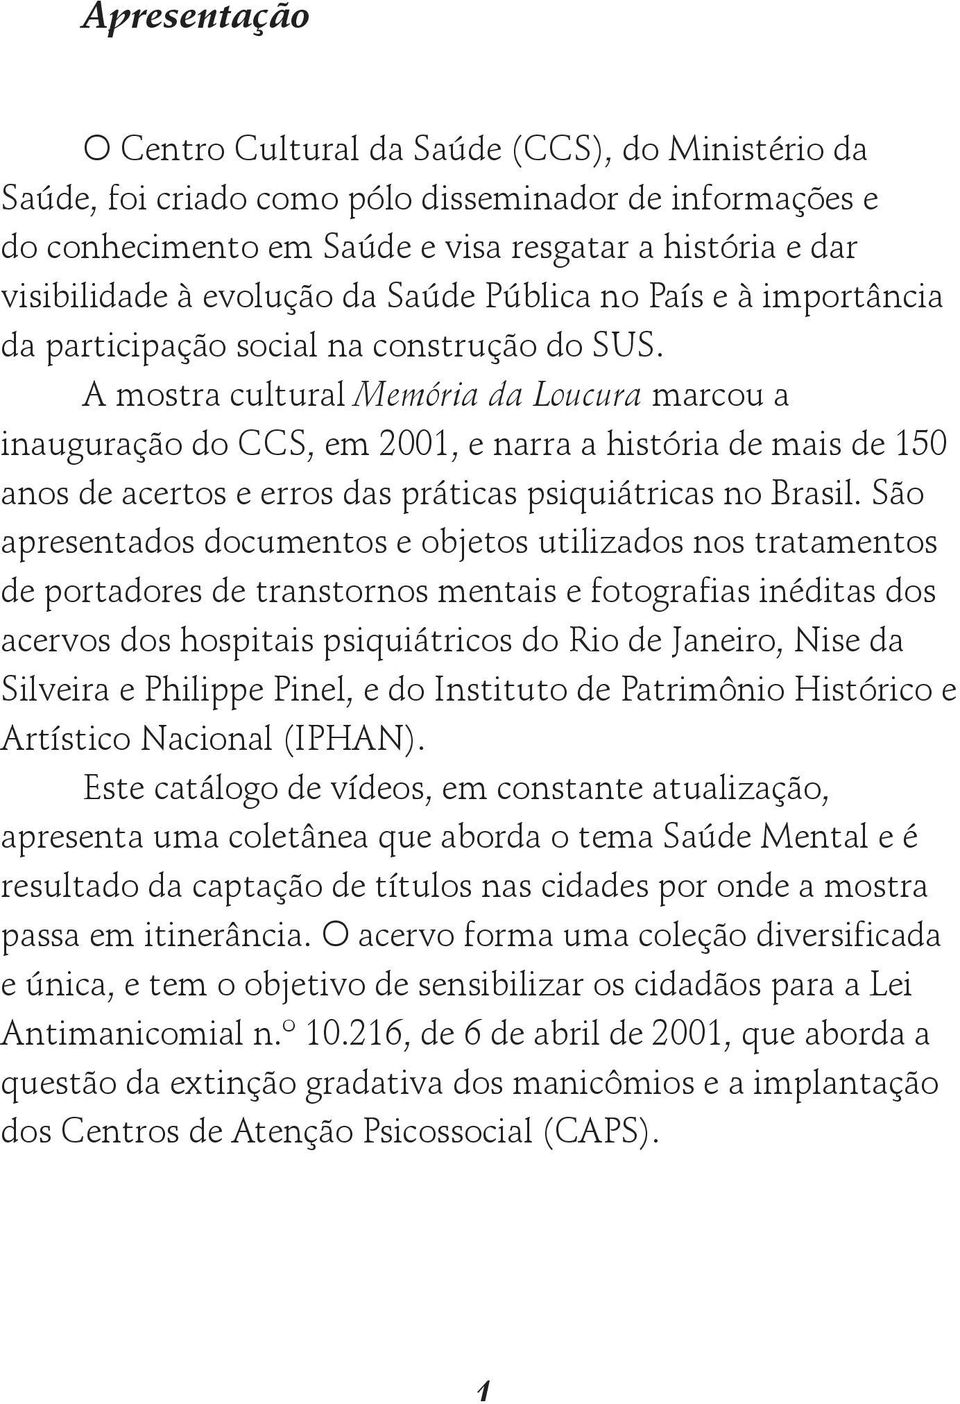 A mostra cultural Memória da Loucura marcou a inauguração do CCS, em 2001, e narra a história de mais de 150 anos de acertos e erros das práticas psiquiátricas no Brasil.